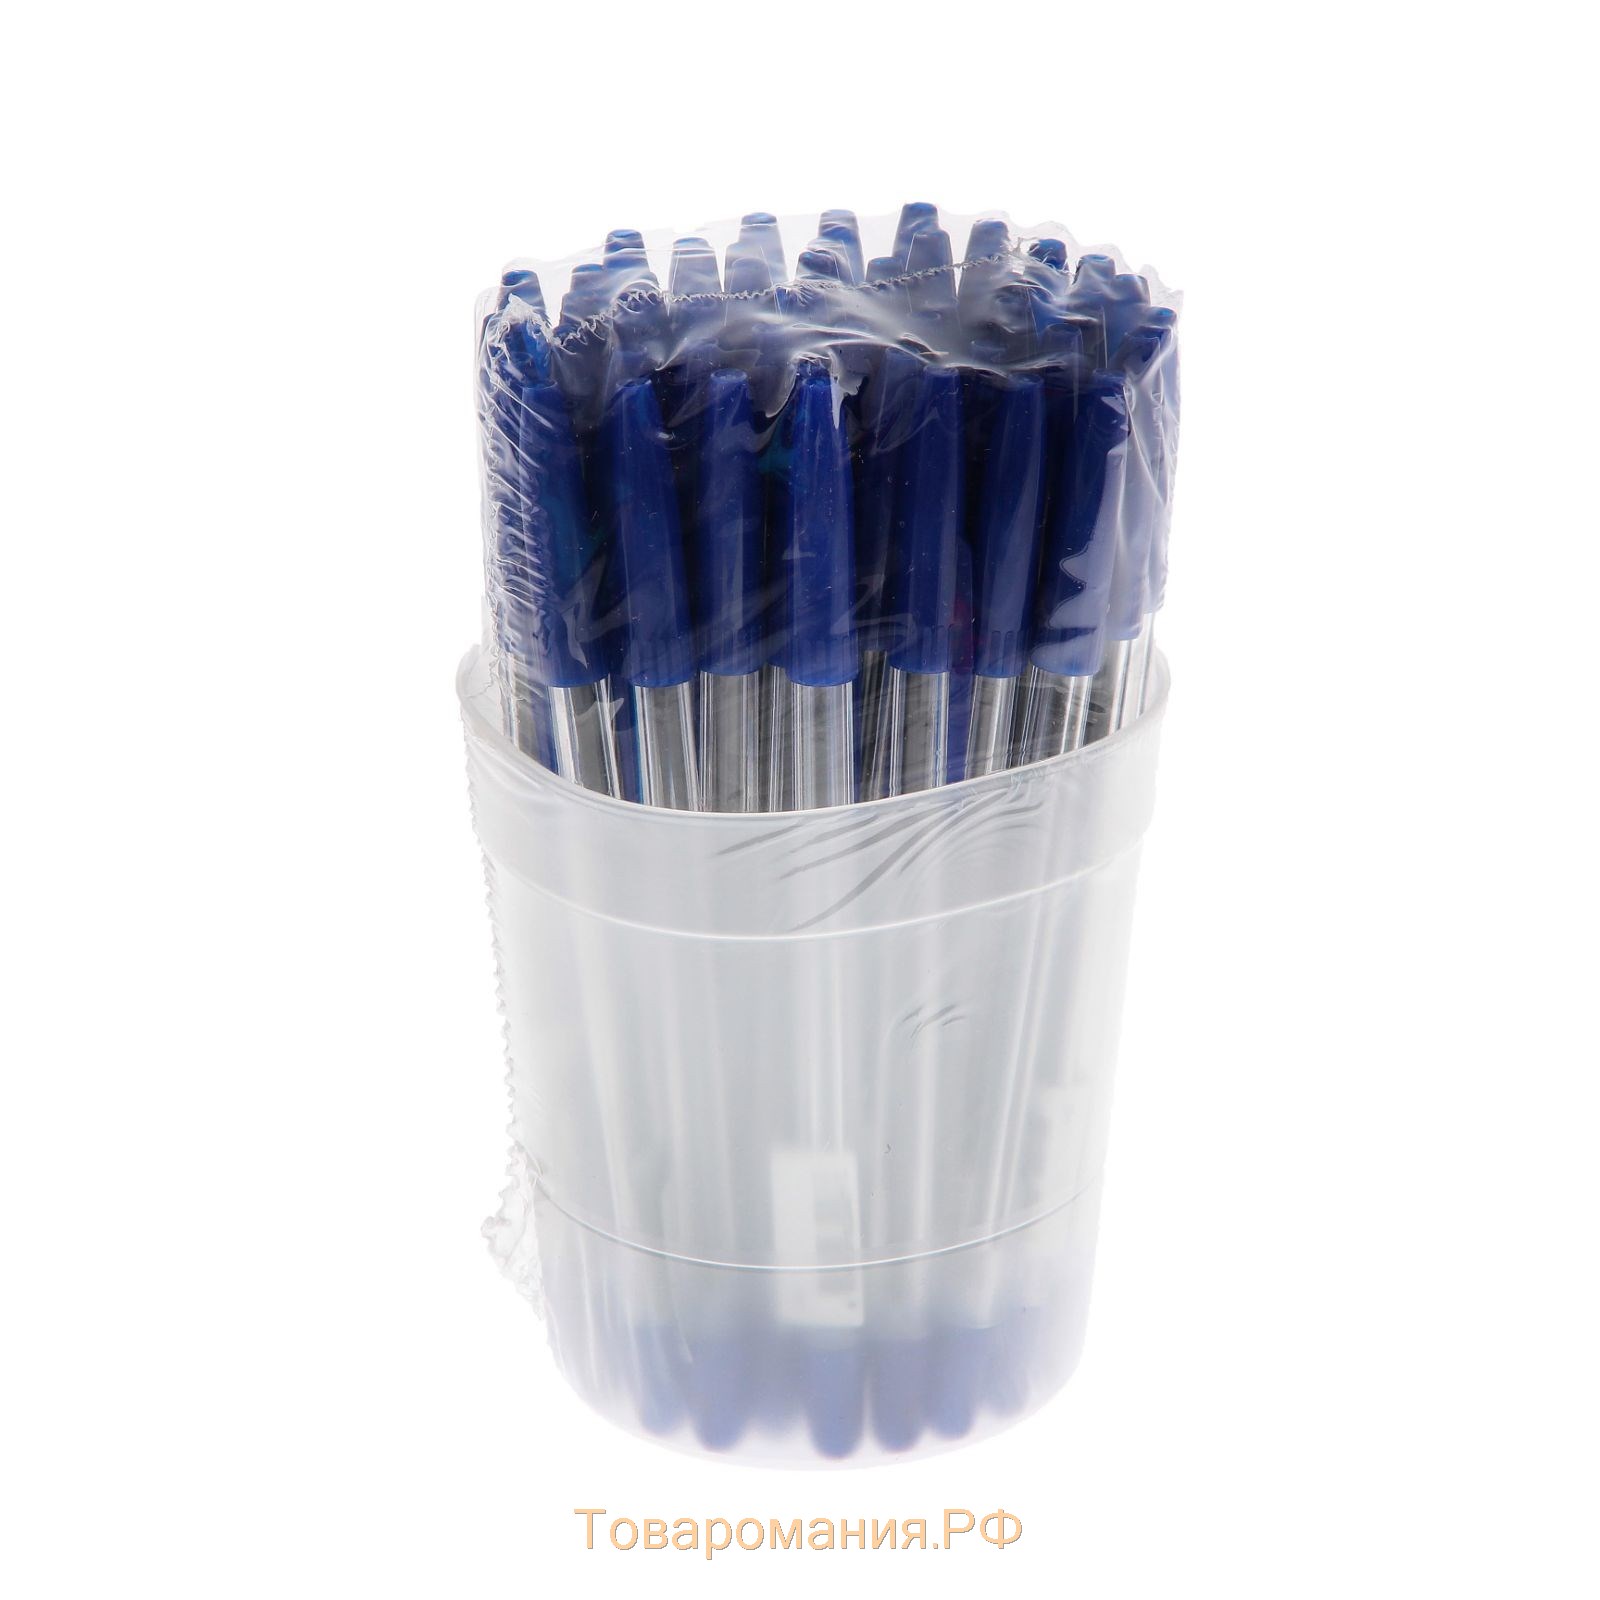 Ручка шариковая СТАММ "111", узел 1.0 мм, чернила синие, стержень 135 мм